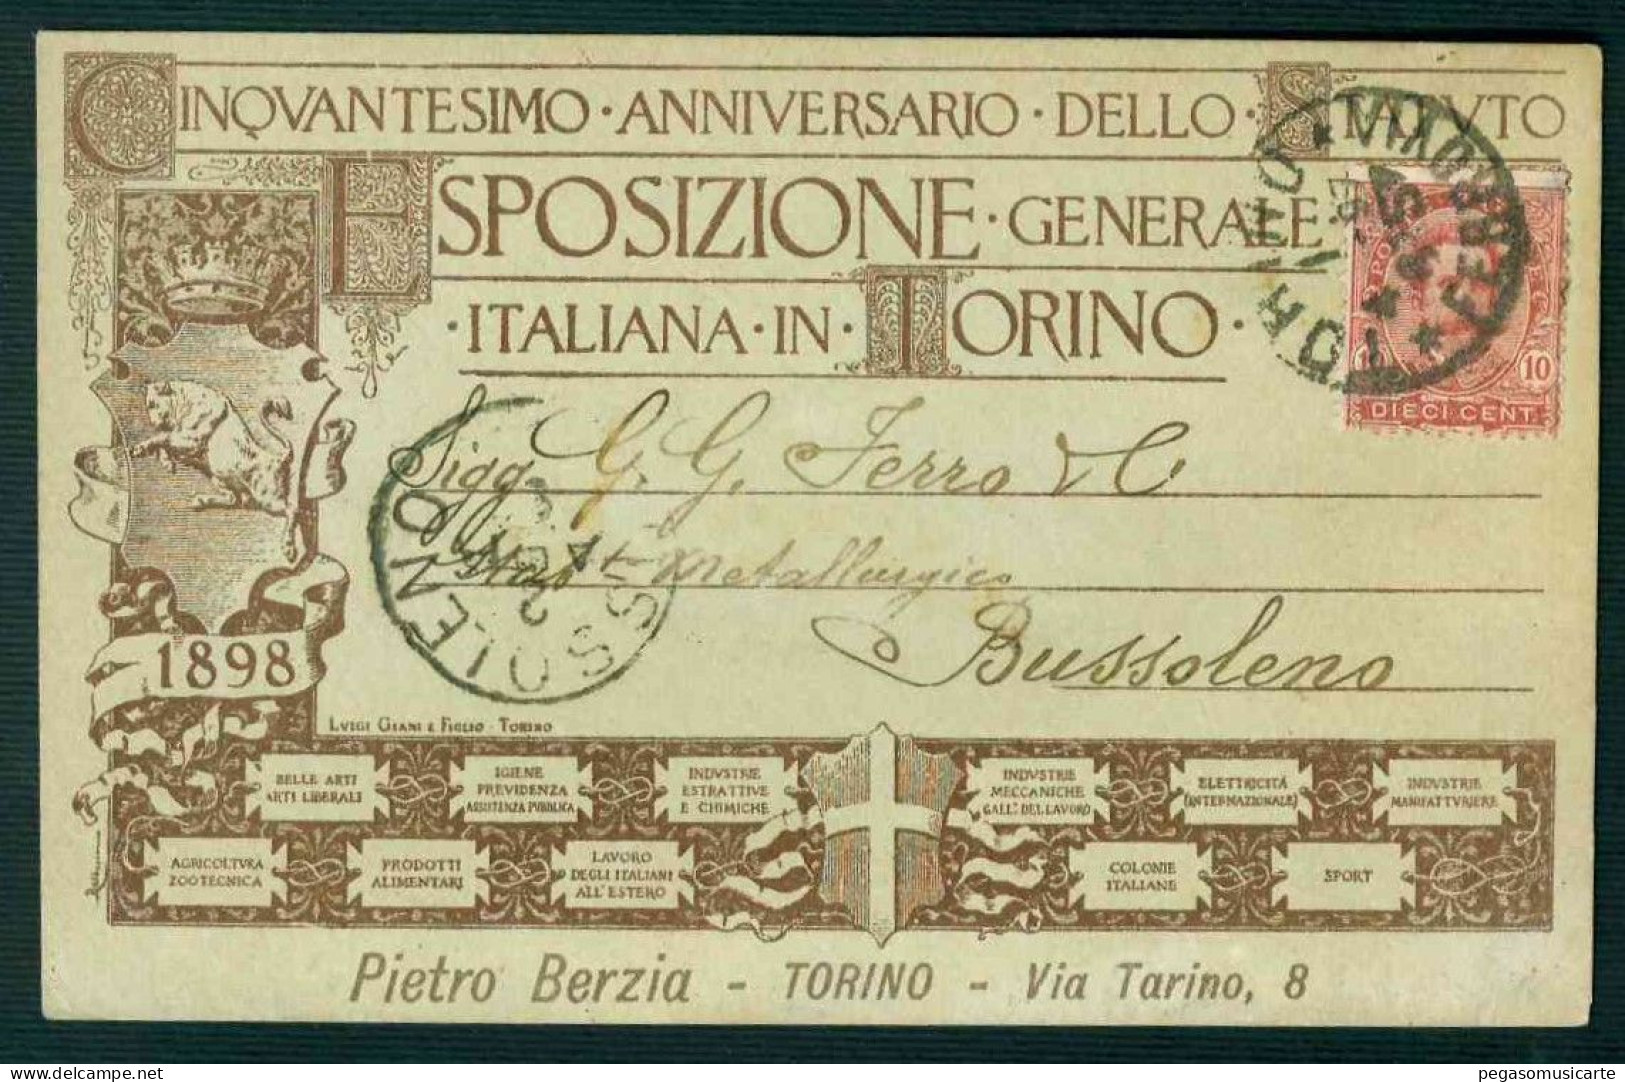 BK004 CINQUANTESIMO ANNIVERSARIO DELLO STATUTO ESPOSIZIONE GENERALE ITALIANA IN TORINO 1897 - Exhibitions